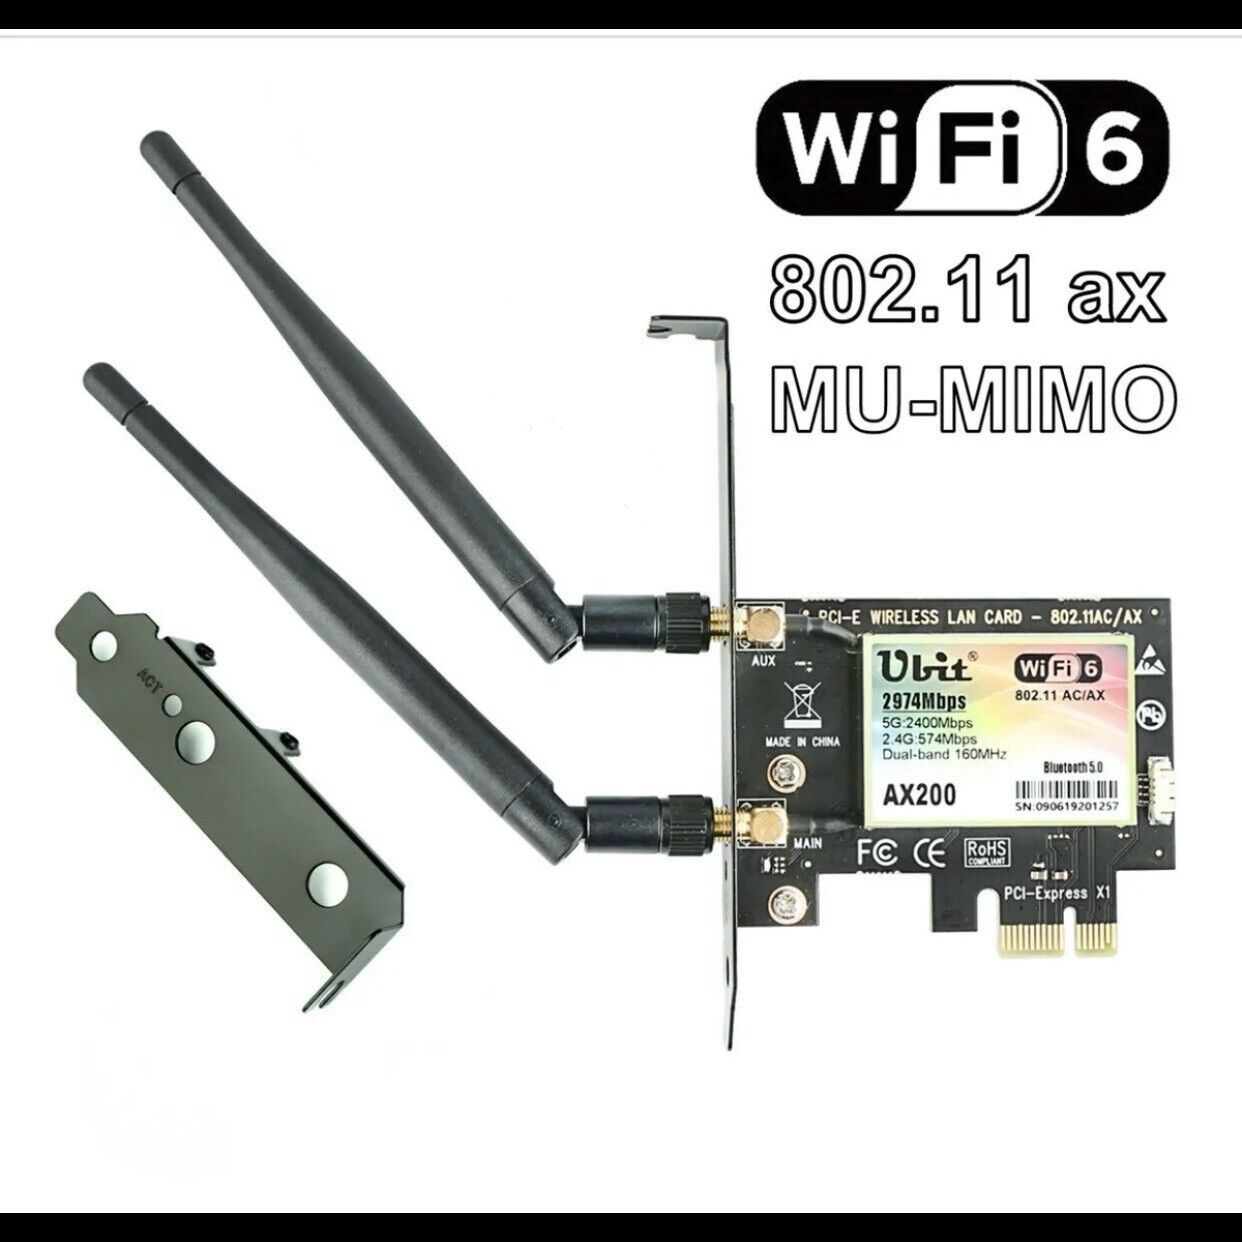 Ubit AX WiFi 6 WiFi Card Dual Band 3000 Mbps AX200 PCIE Wireless WLAN WiFi Card